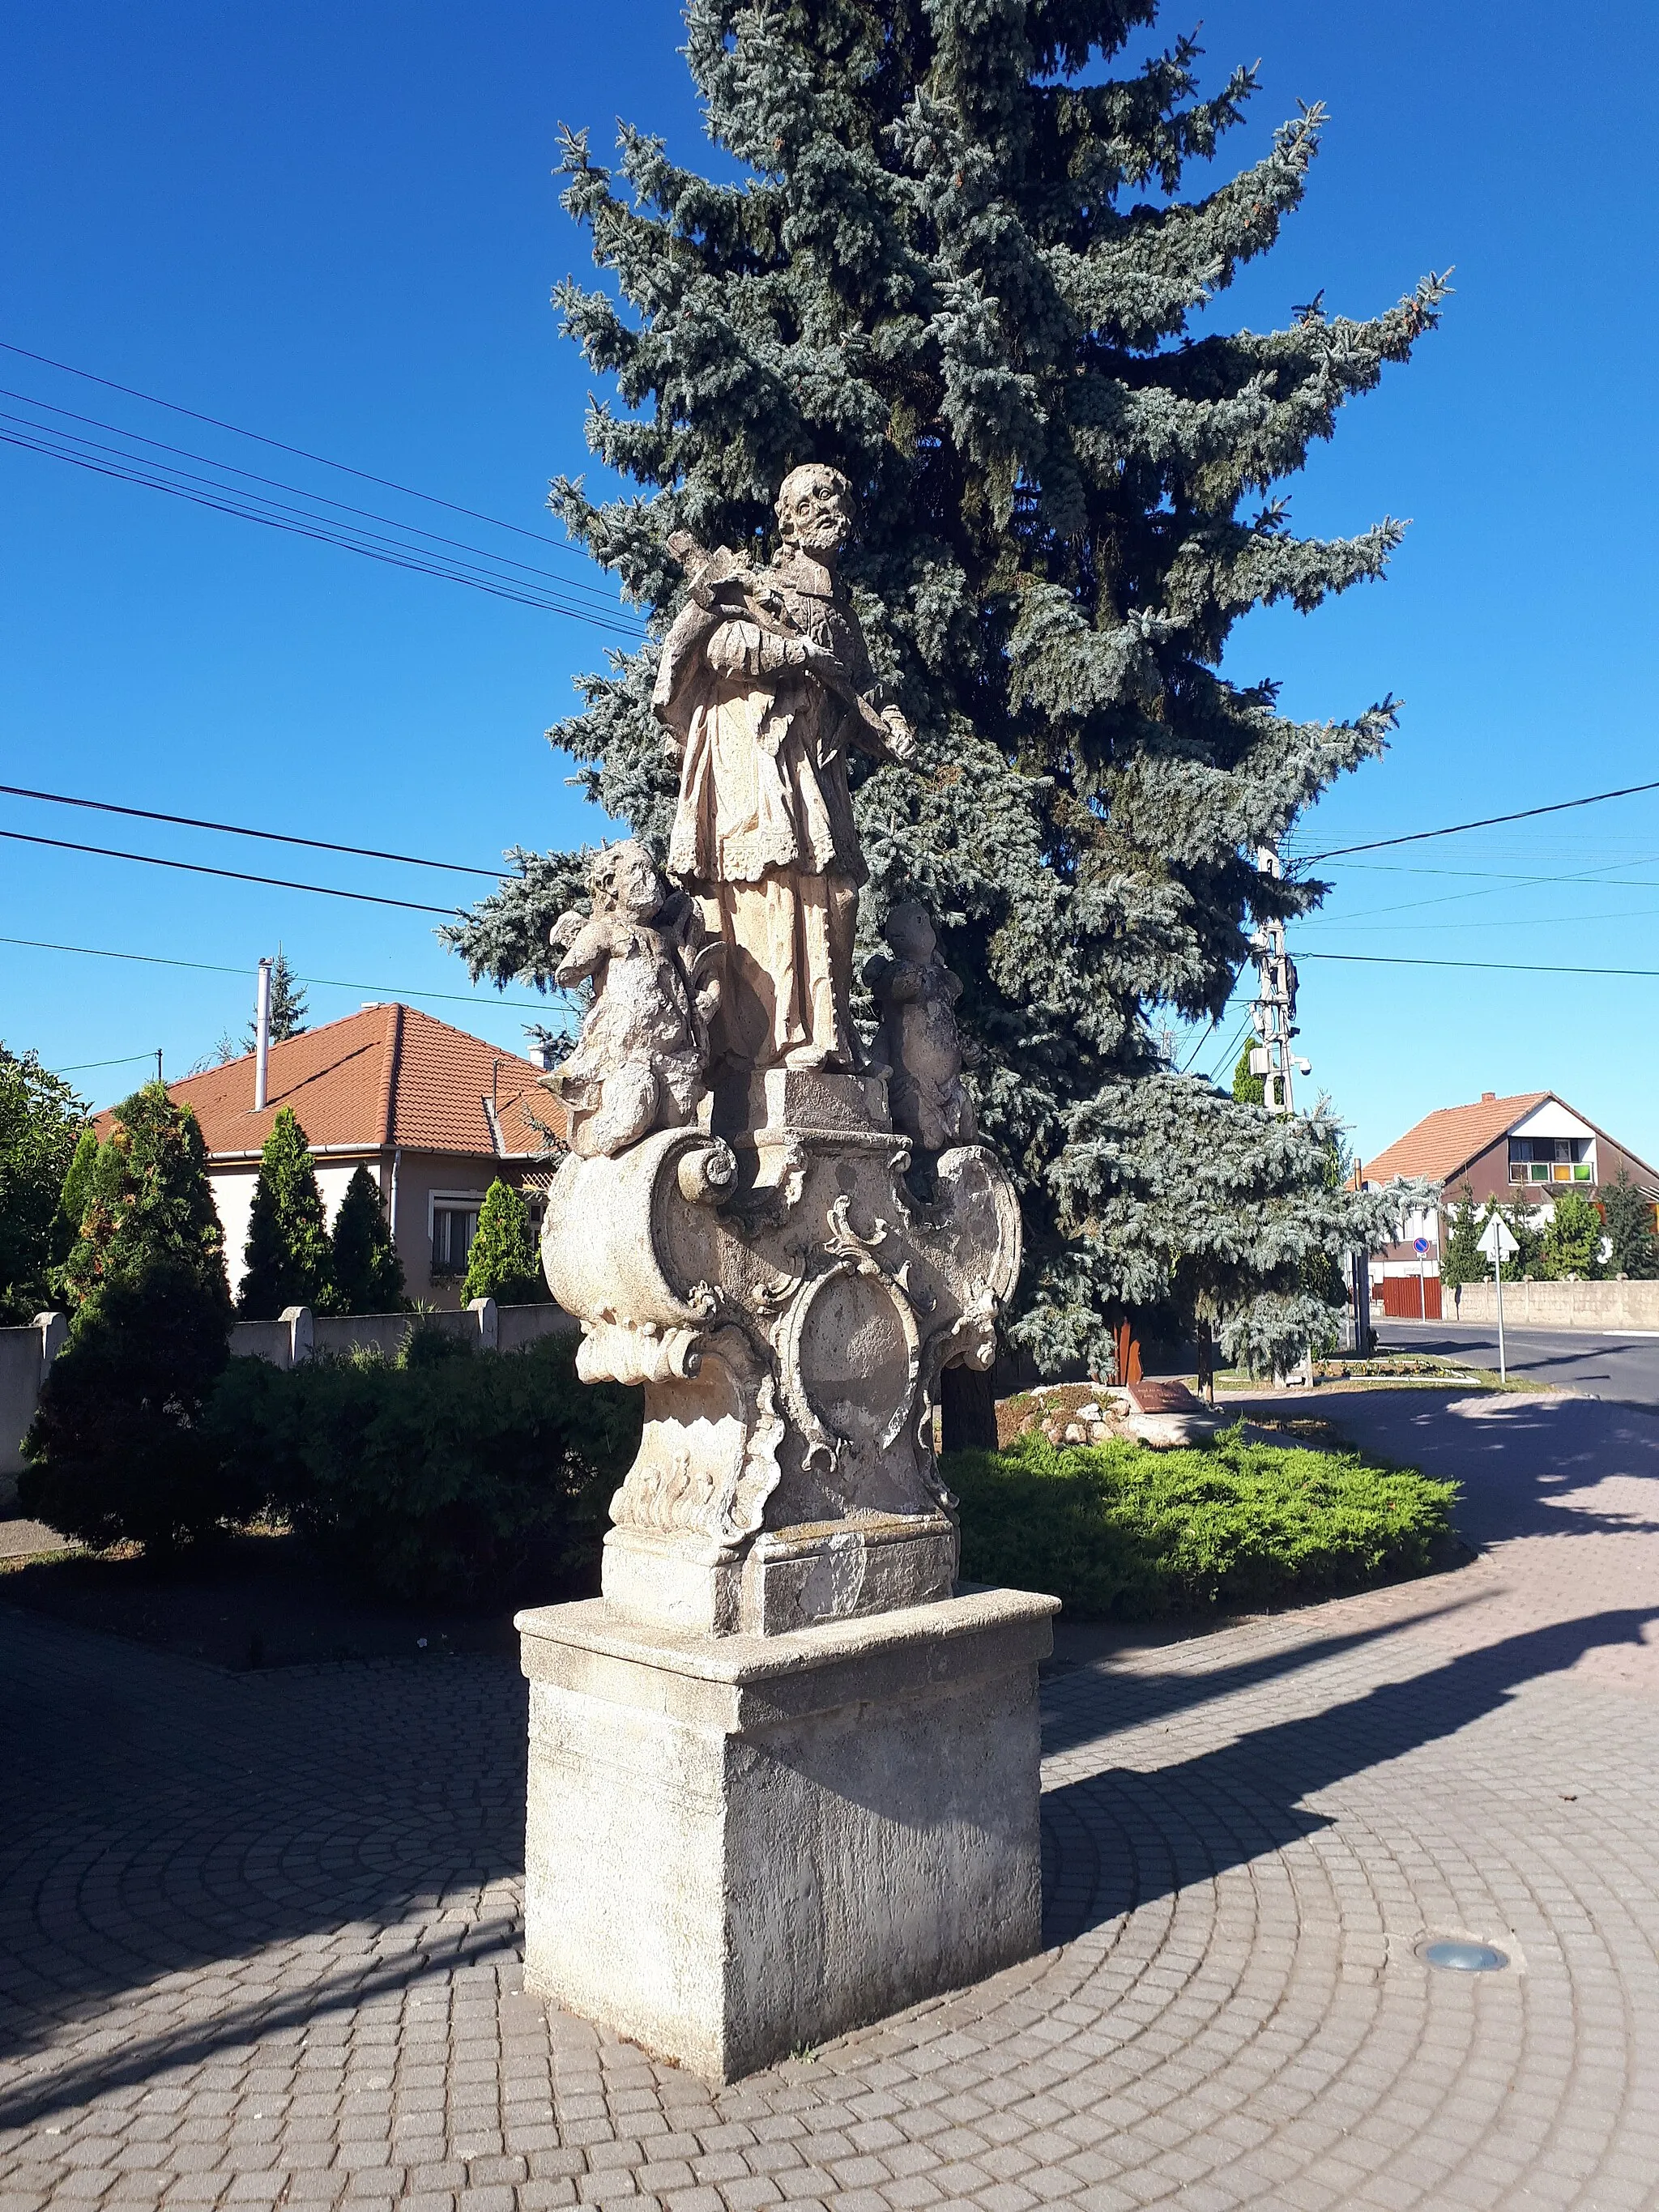 Photo showing: A műemlék Nepomuki Szent János-szobor Sajóládon, mely a műemléki adatbázissal ellentétben nem a Sajó-hídnál, hanem a főtéren, a templomnál áll

This is a photo of a monument in Hungary. Identifier: 3067